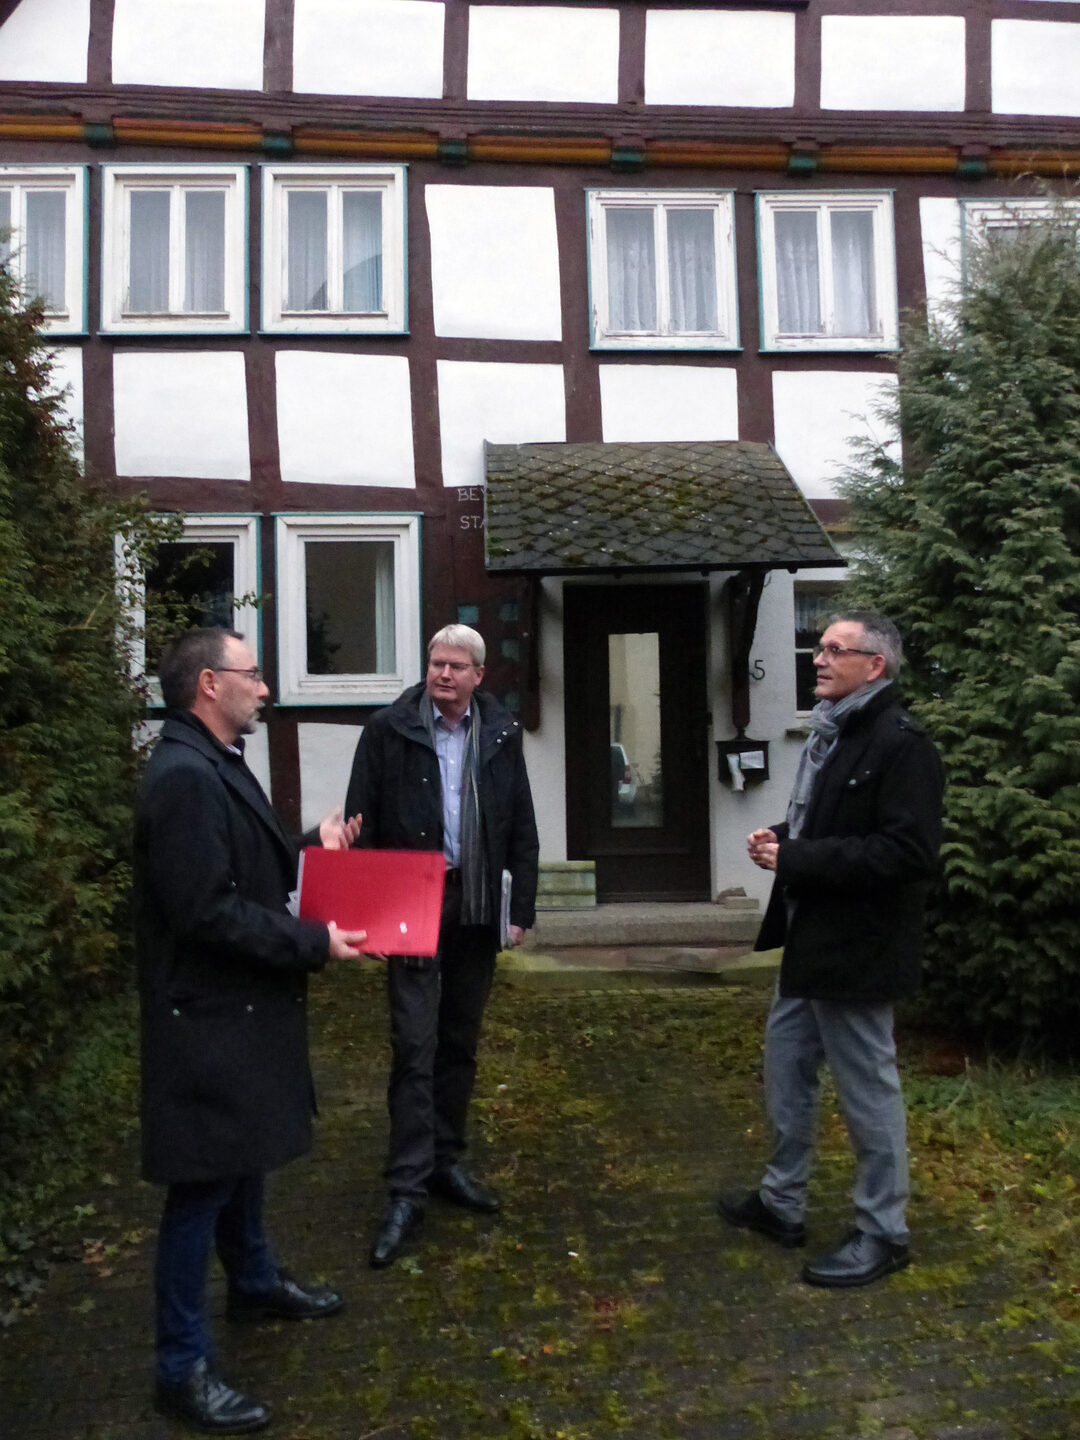 Auf dem angehängten Foto sieht man von links nach rechts Bürgermeister Harald Munser, Peter Nissen (Servicezentrum Regionalentwicklung) und Vizelandrat Andreas Siebert vor dem ältesten Haus Liebenaus, das seit drei Jahren leer steht.